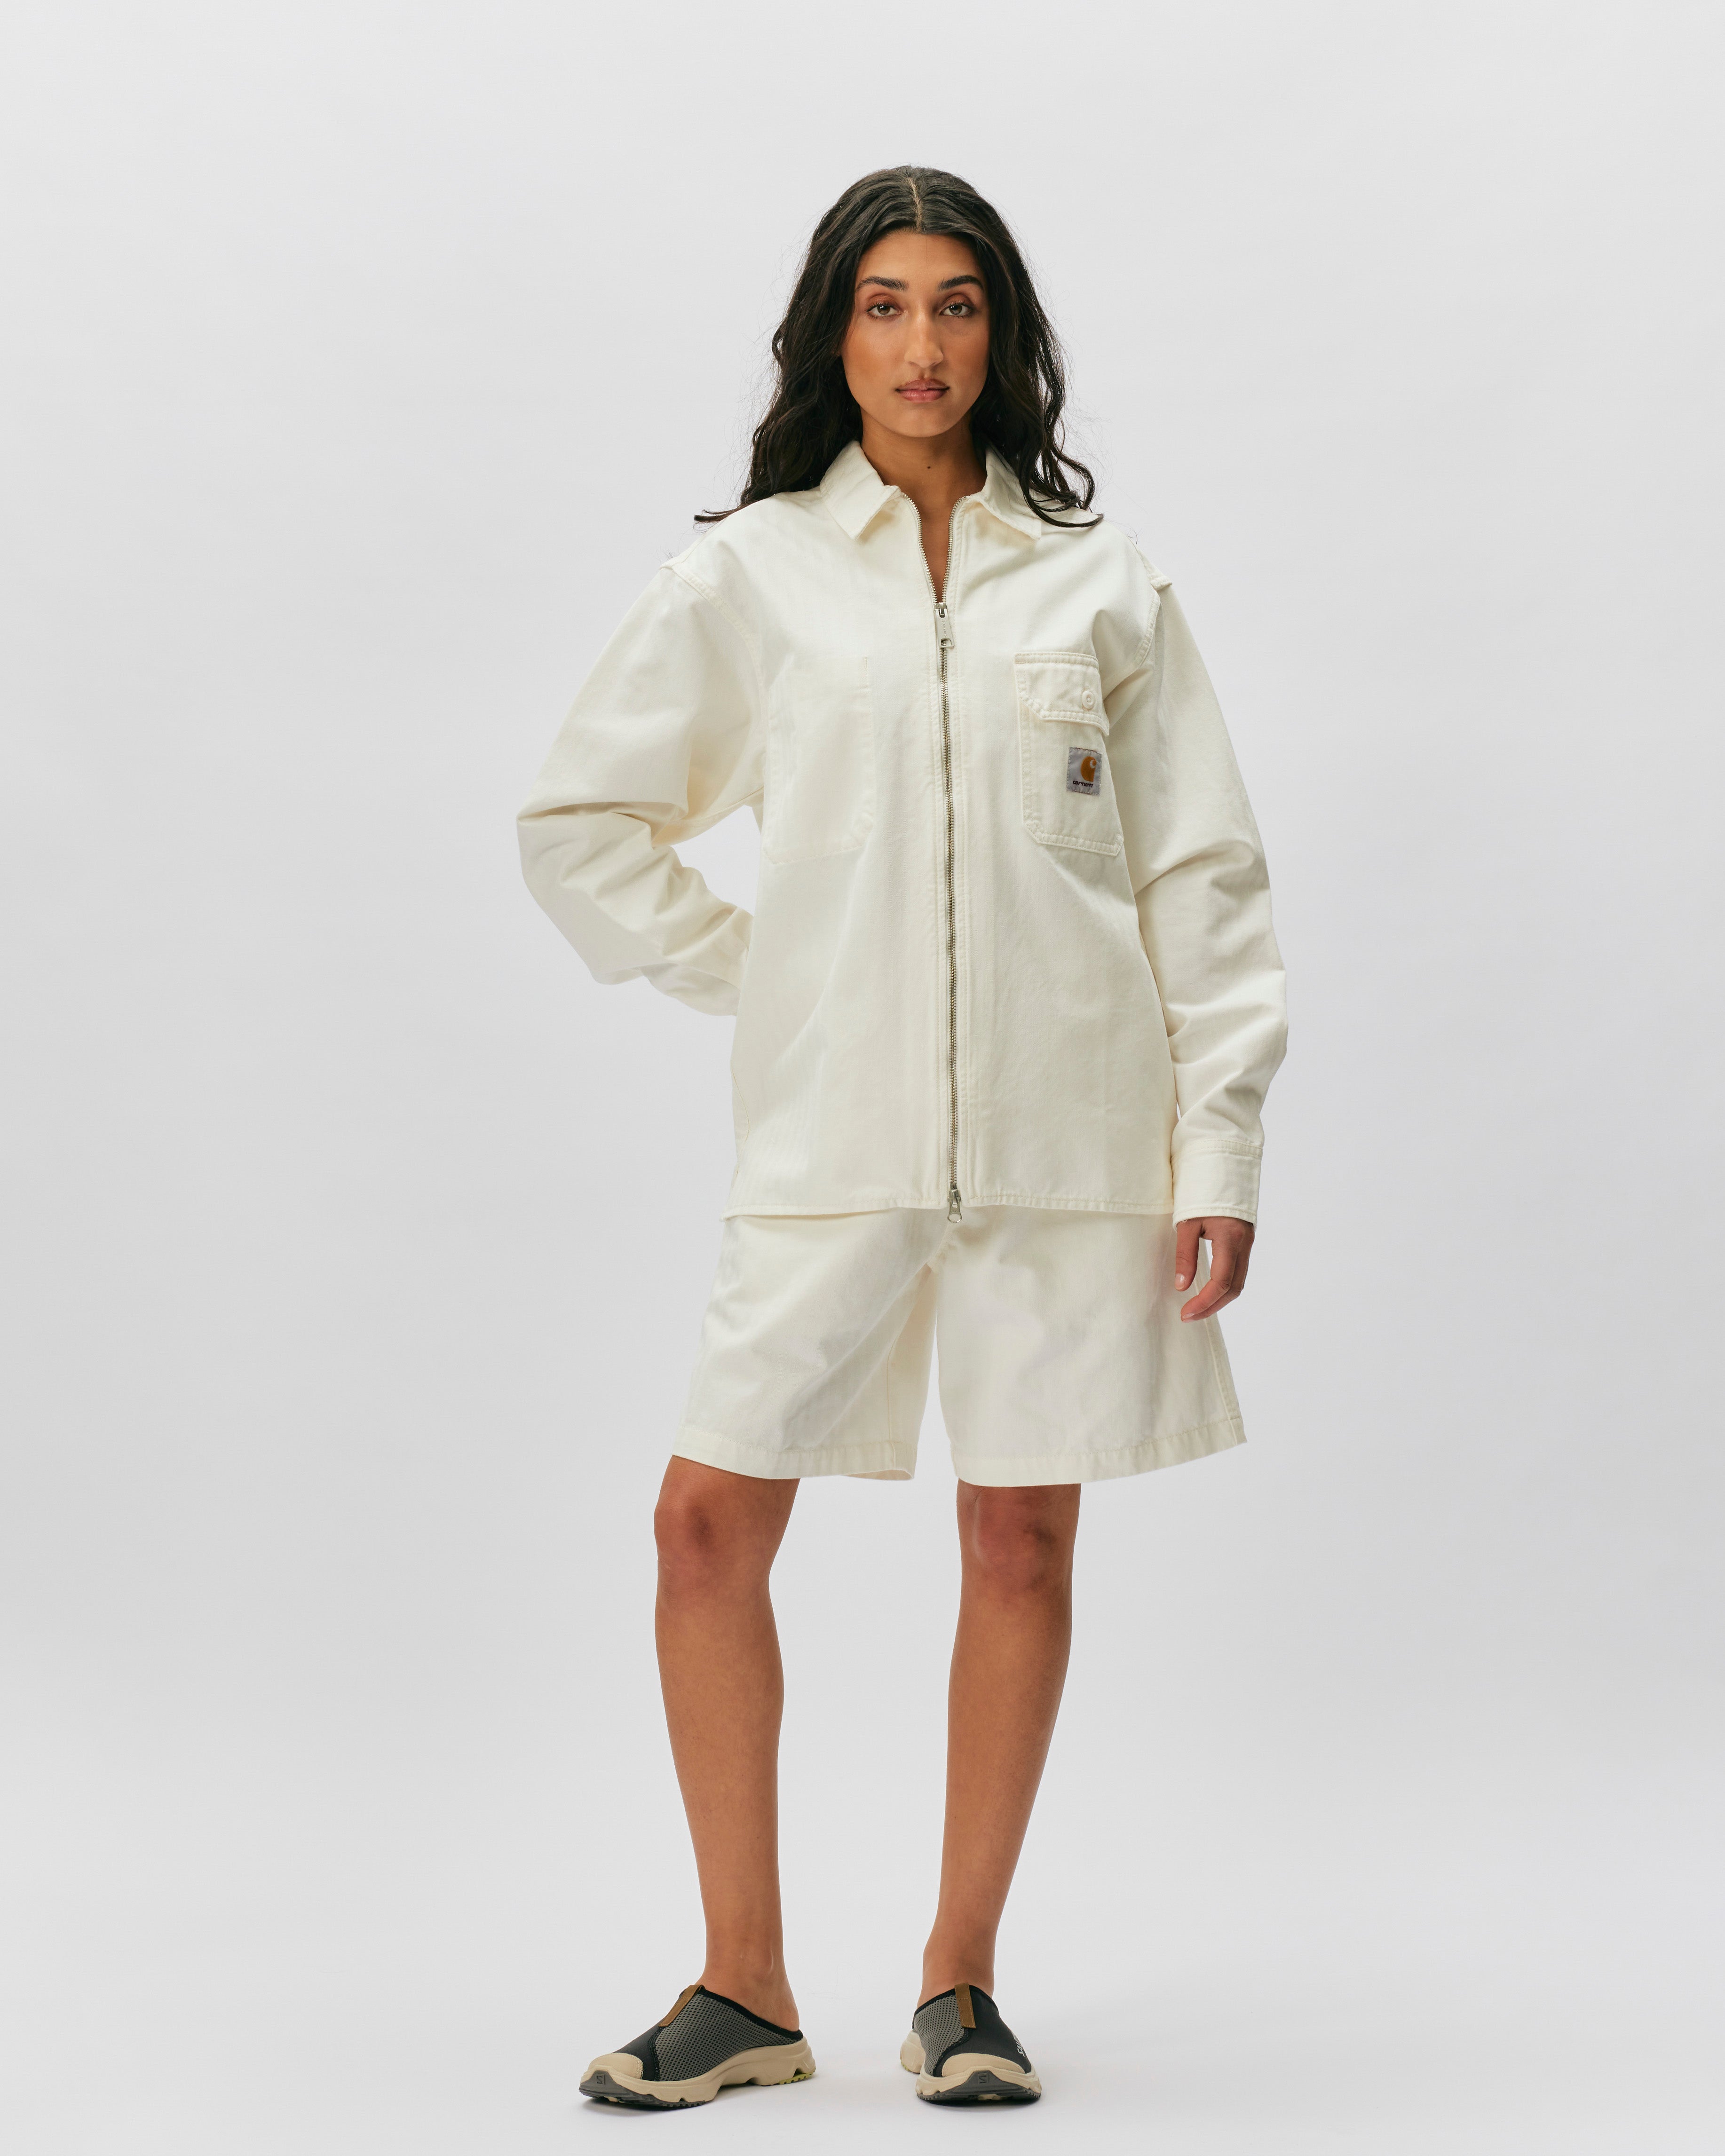 Carhartt WIP Rainer Shirt Jacket Off-White I033276-35002